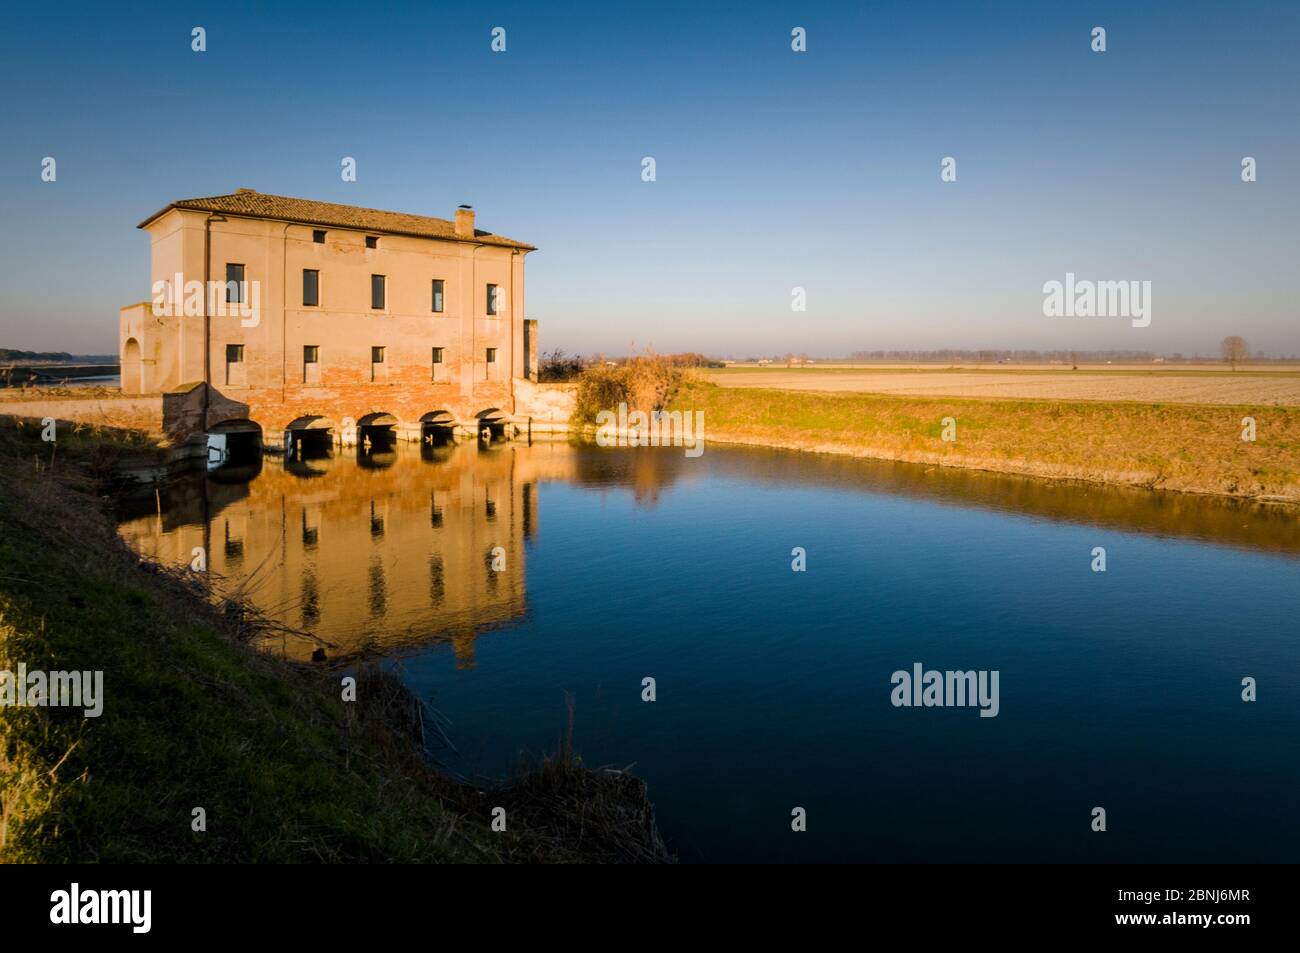 Pompa di scarico. Campotto, Oasi Valle Santa, Argenta, Ferrara, Emilia Romagna, Italia, Europa. Foto Stock